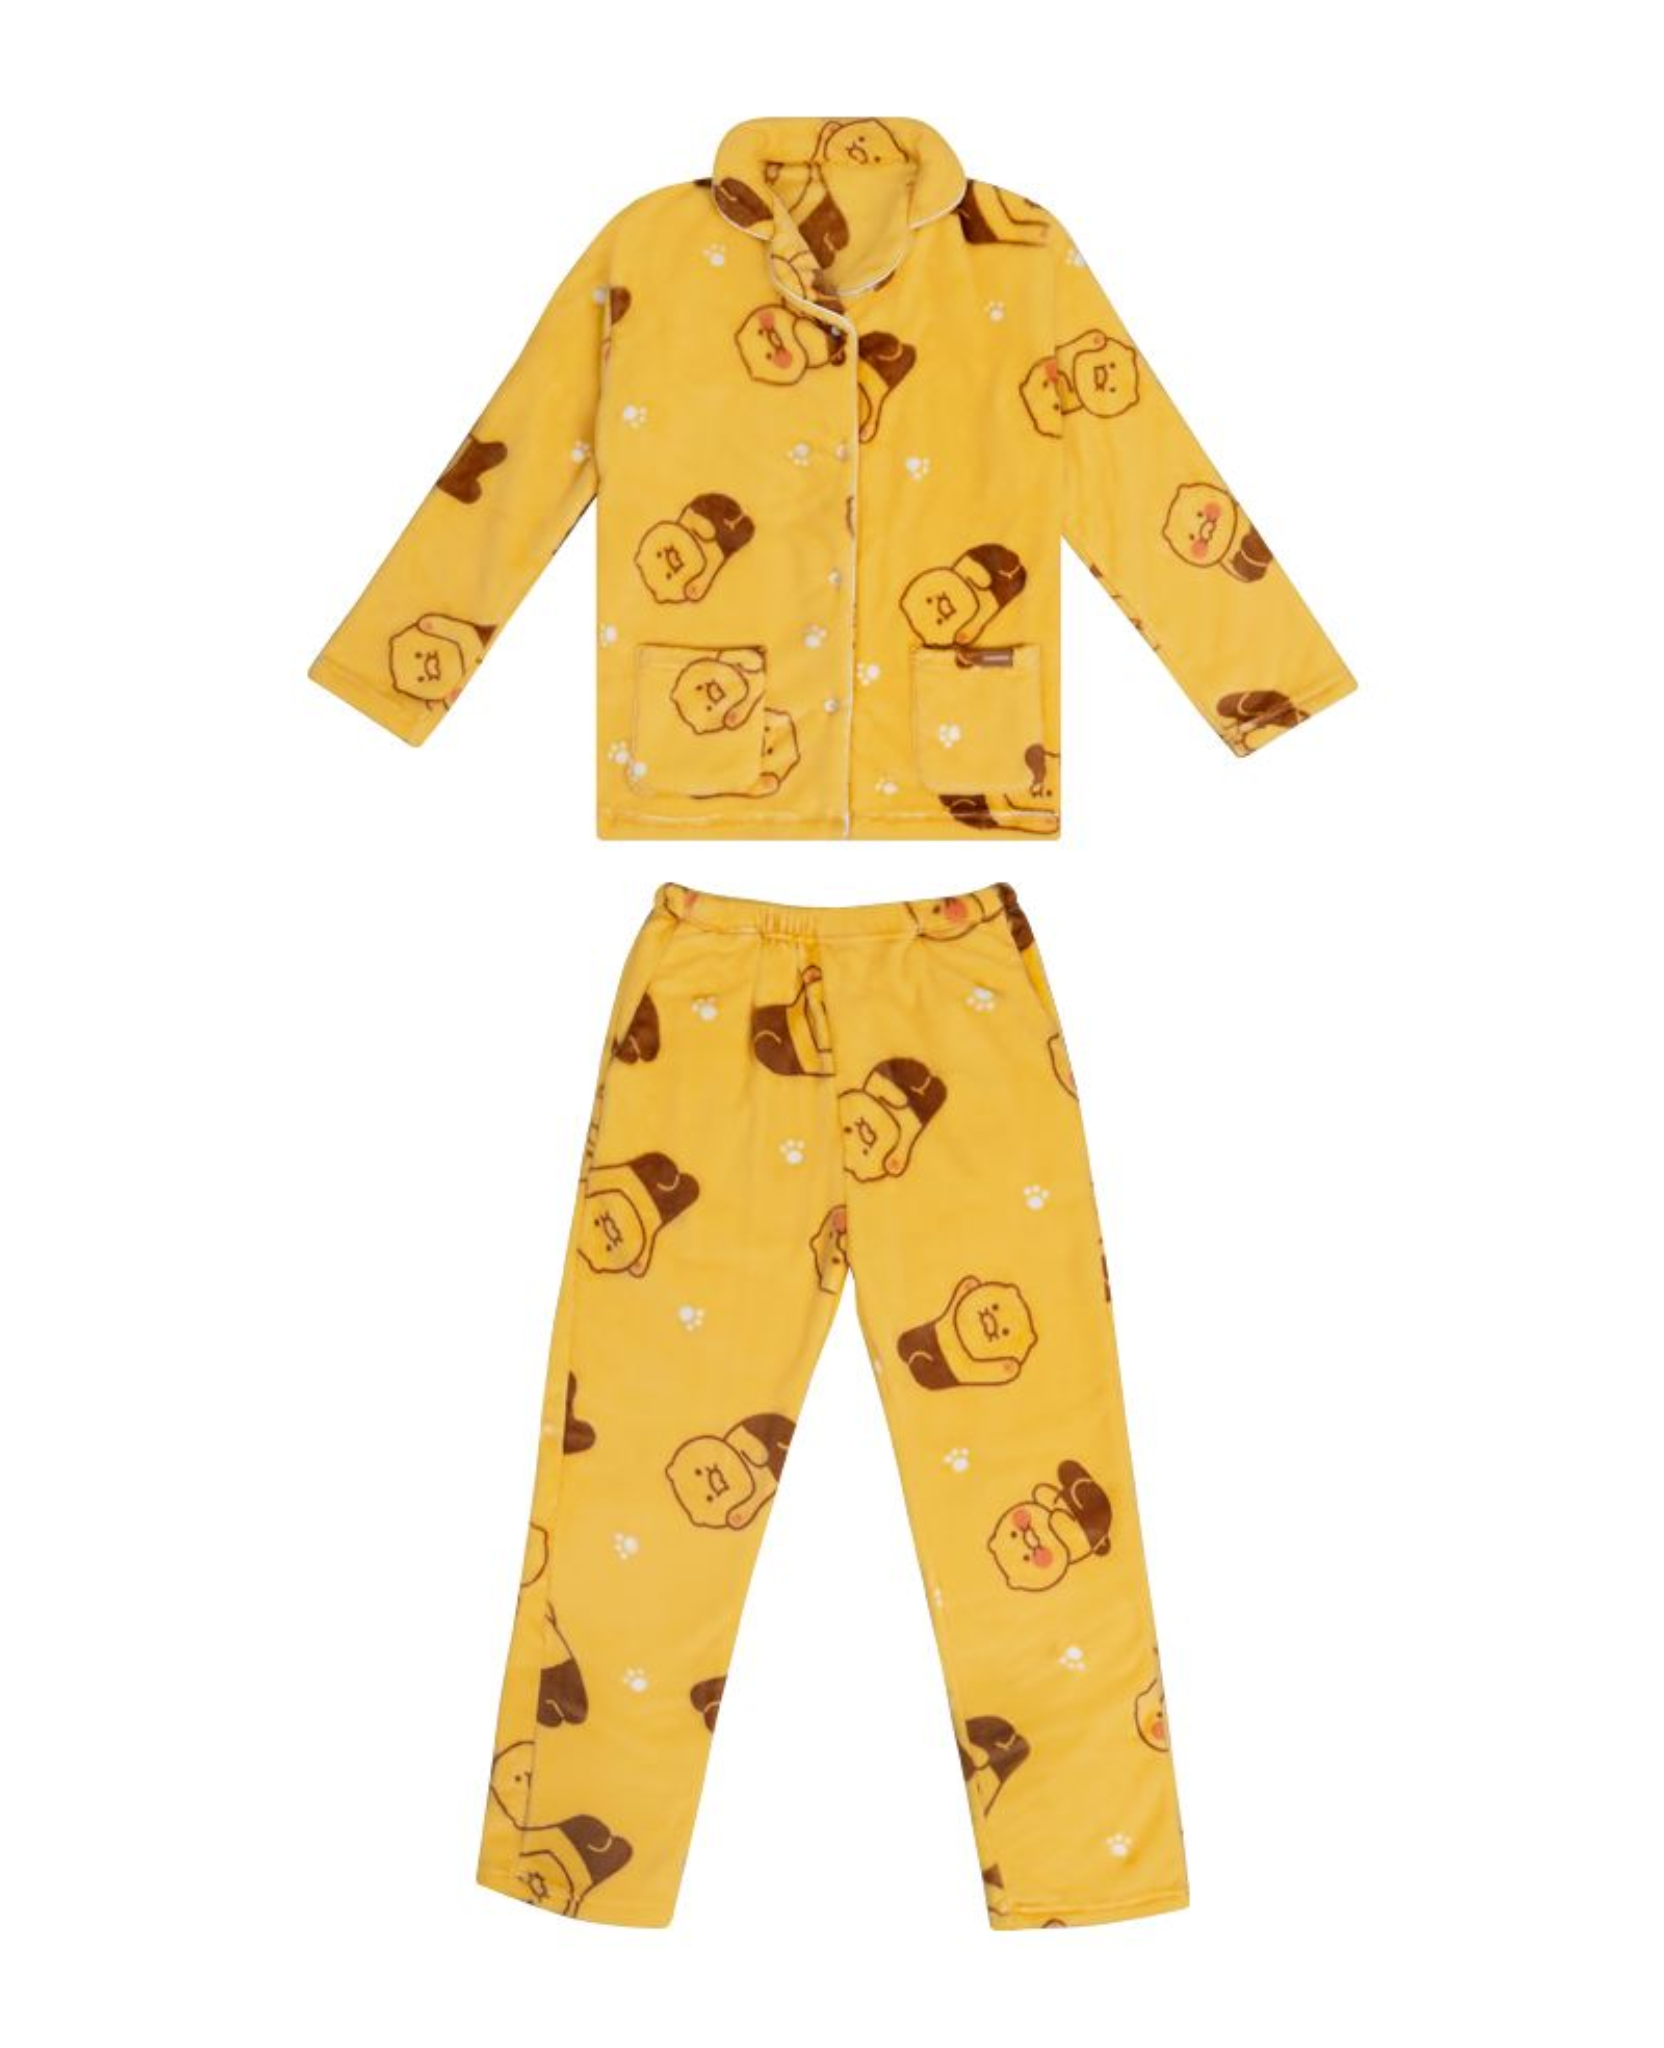 Choonsik Sleeping Pyjama KakaoFriends